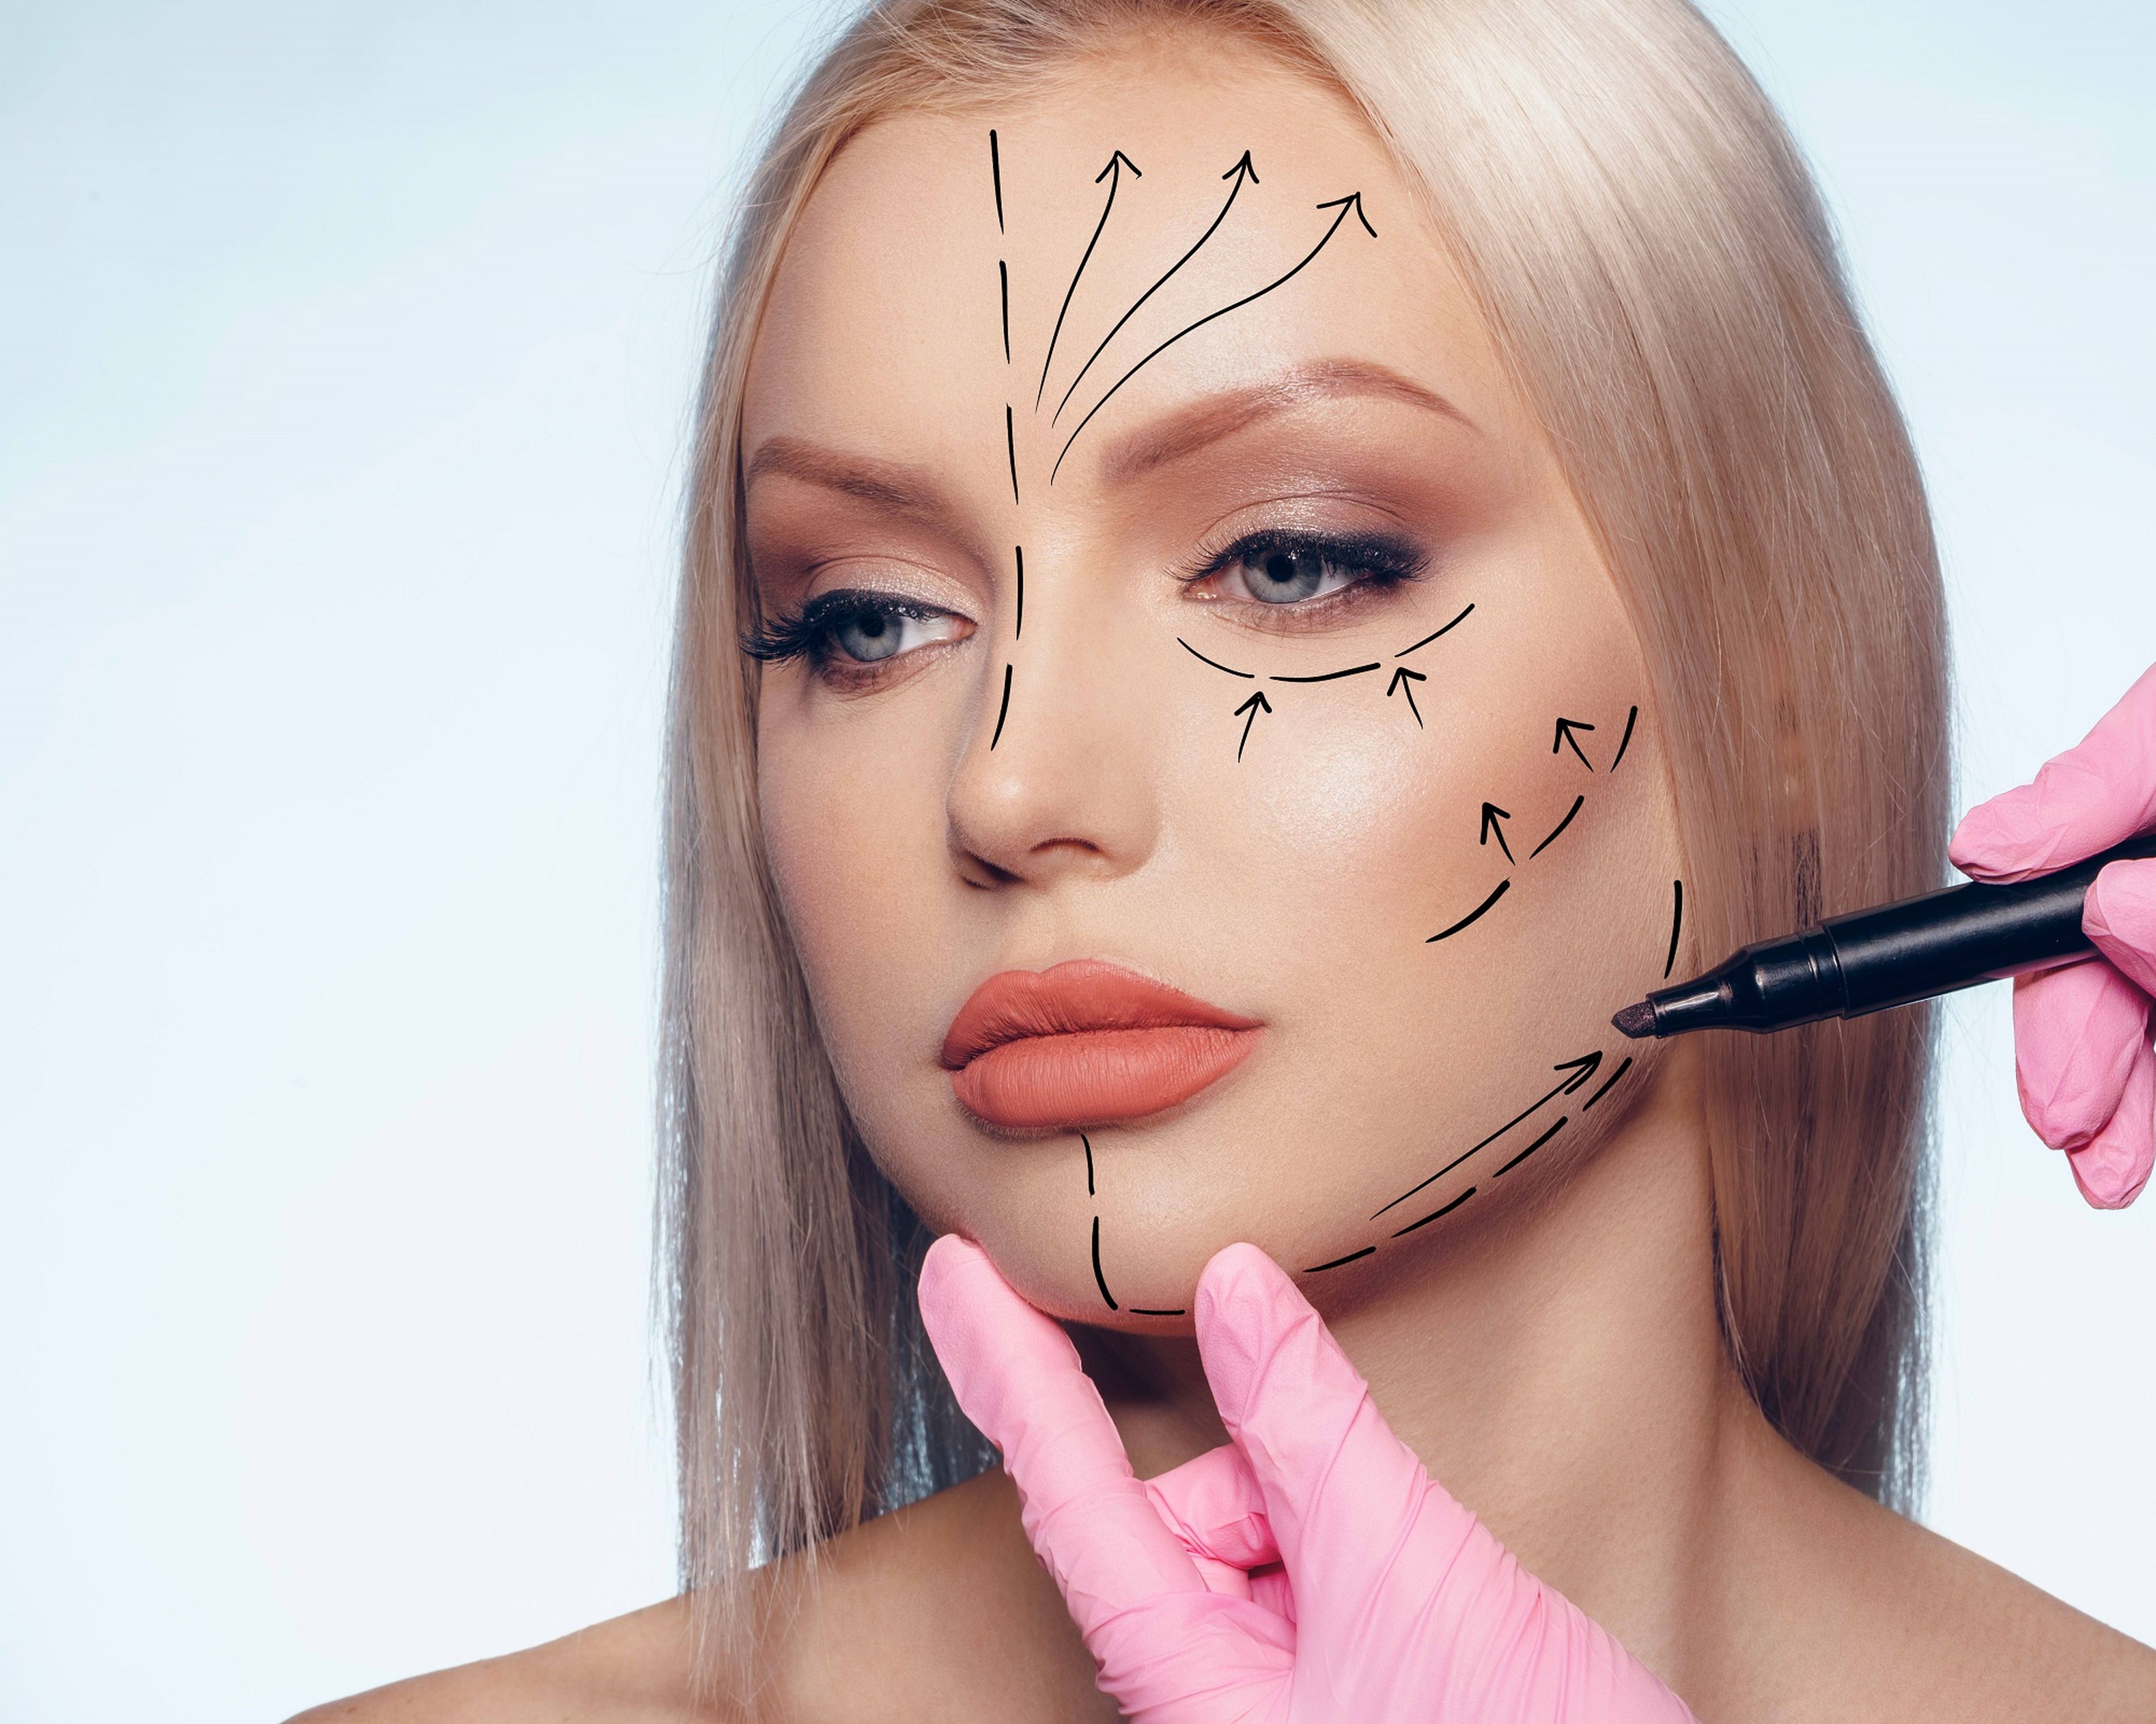 Schönheitschirurg zeichnet im Gesicht einer jungen Patientin strichlierte Linien ein